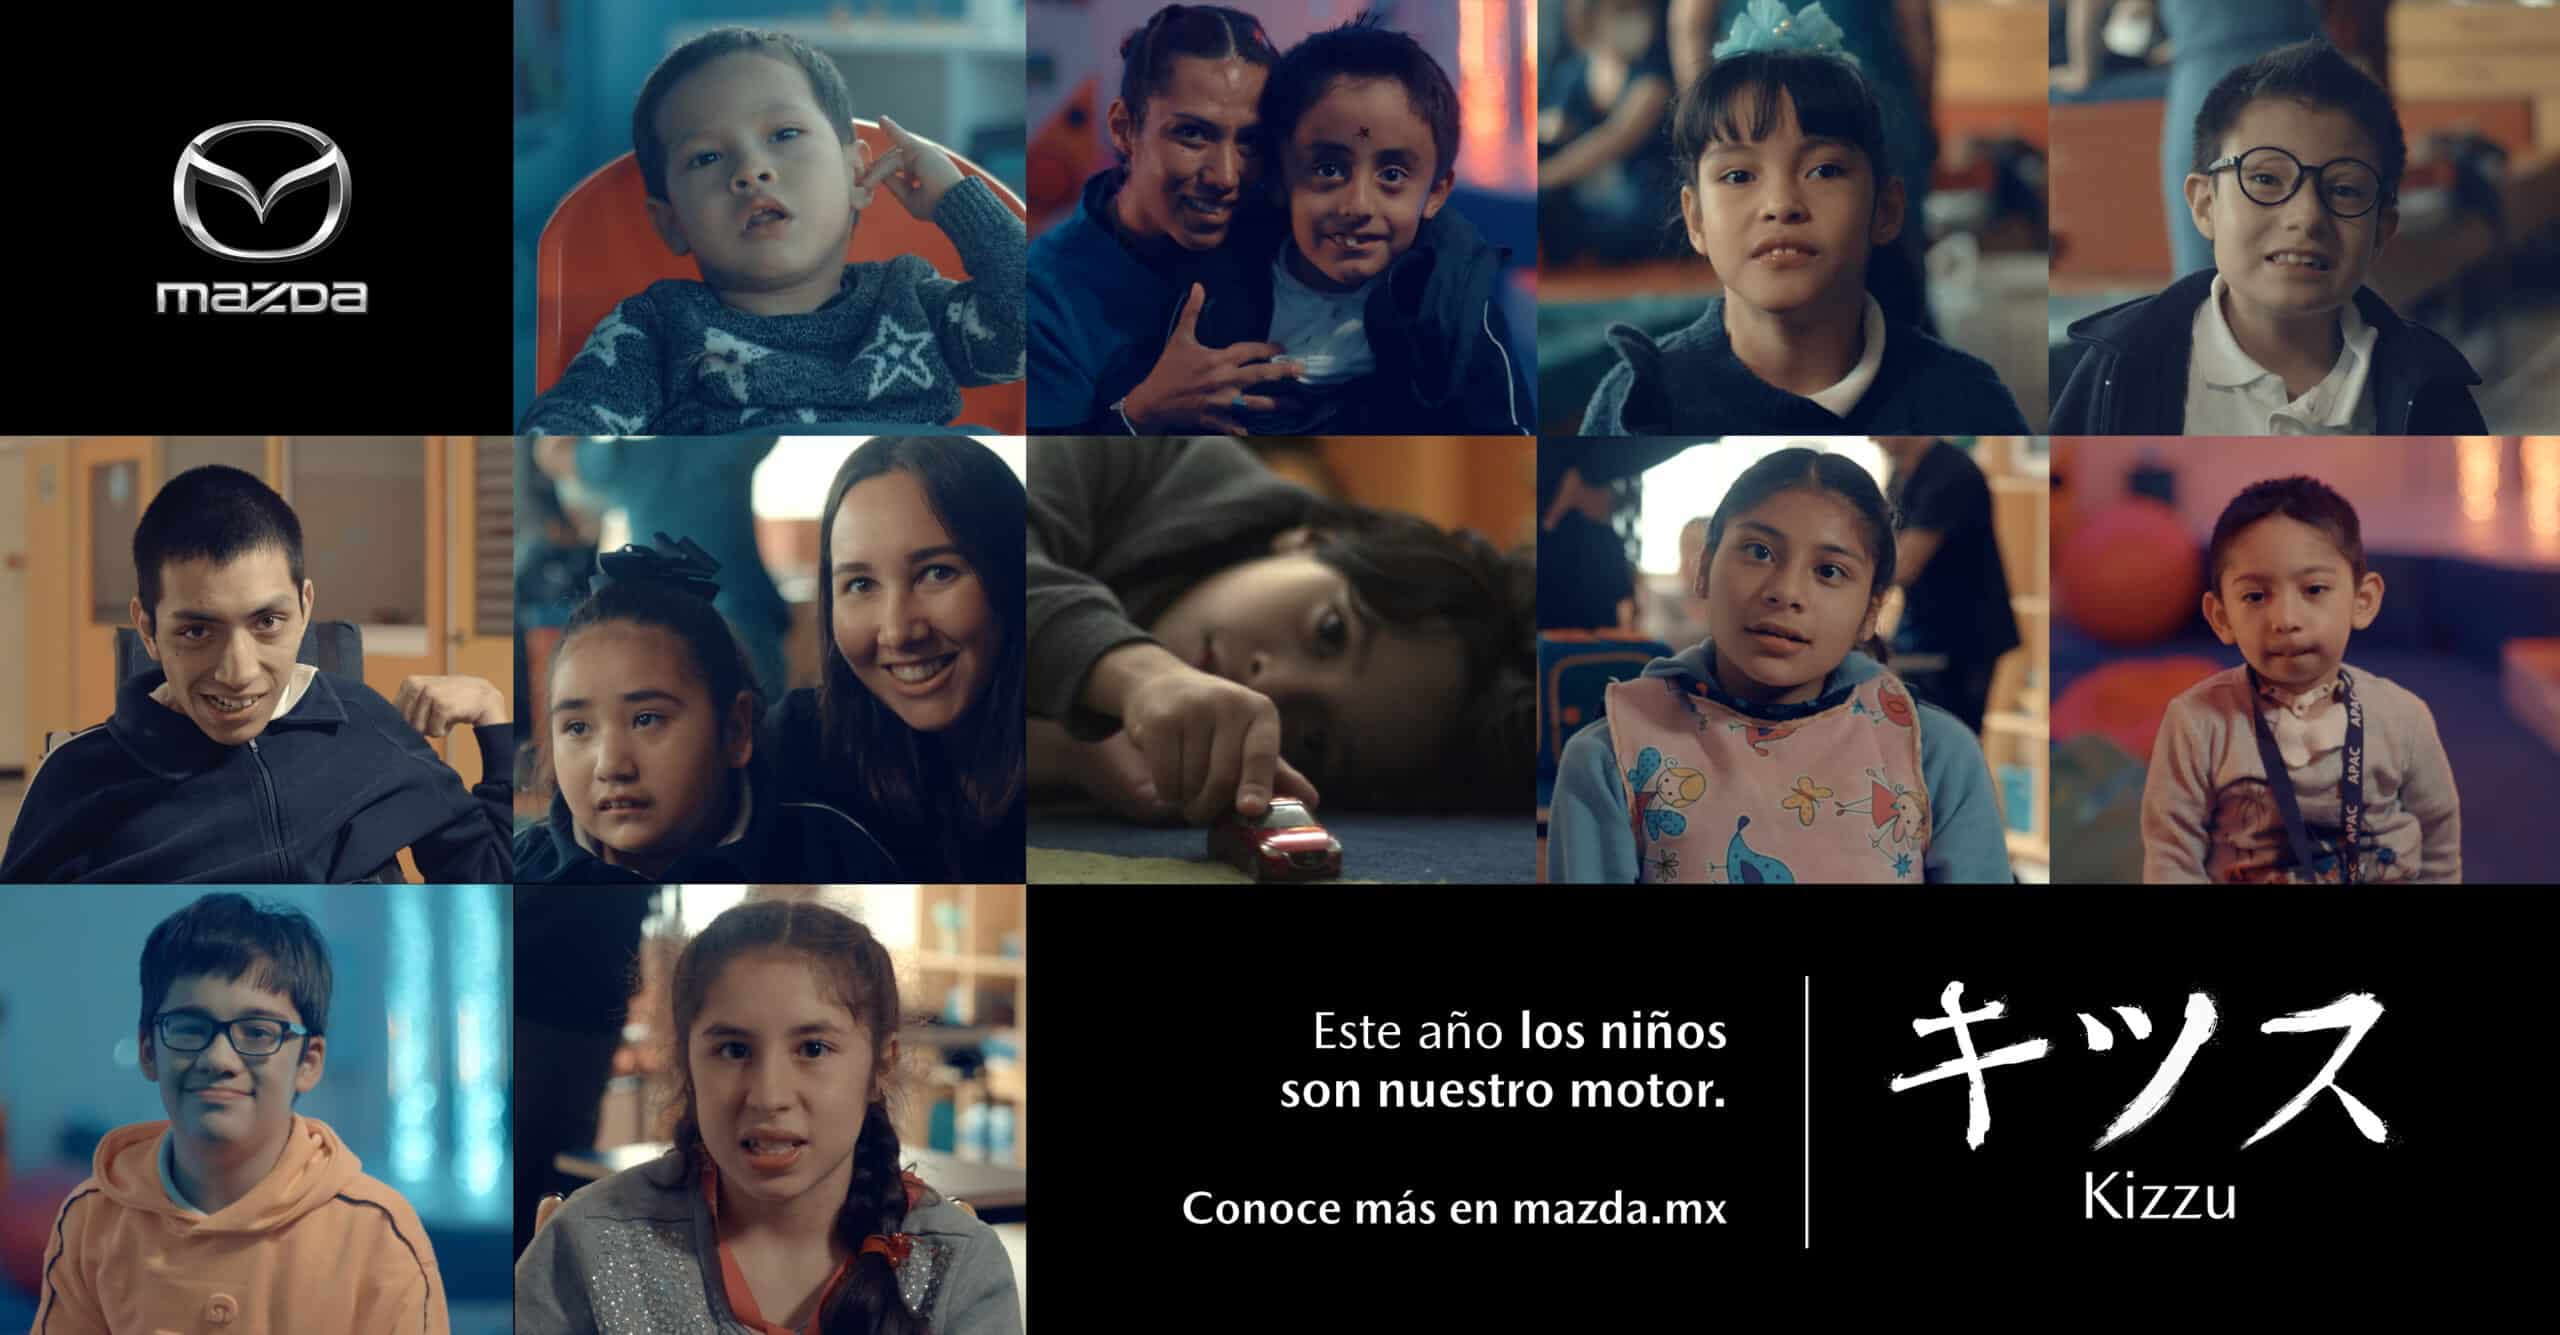 La campaña Kizzu de Mazda México busca apoyar a la niñez